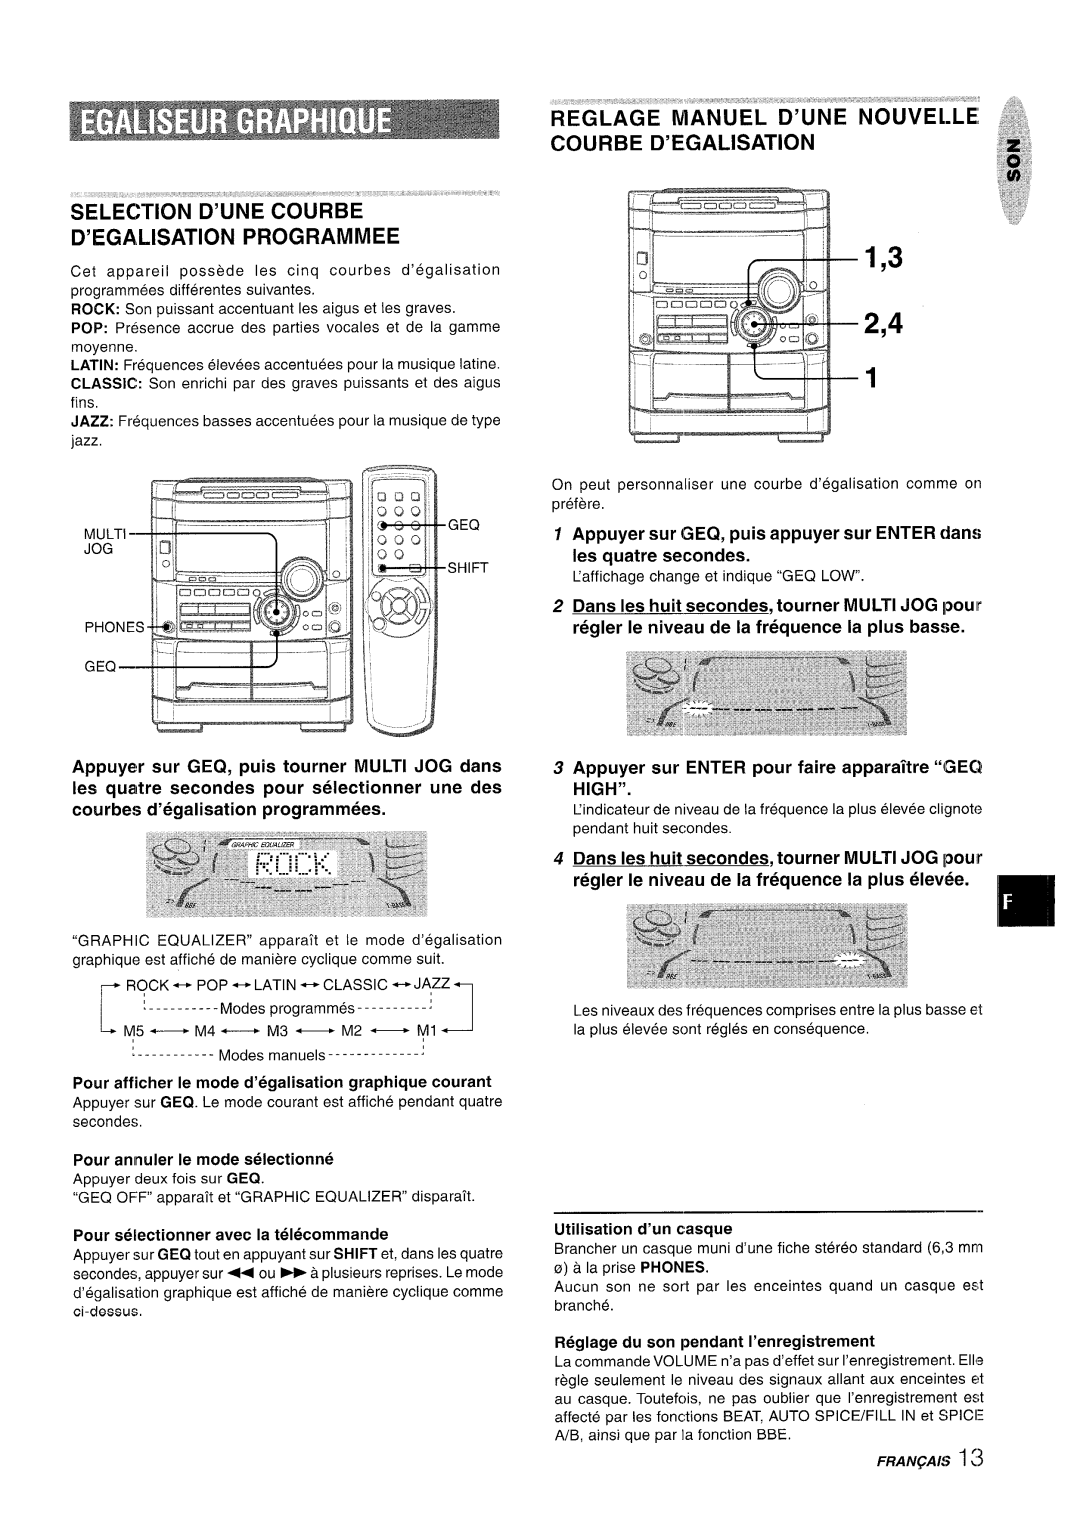 Sony NSX-A777 Selection D’Unecourbe ‘ ‘ D’Egalisation Programmed, Courbe D’Egalisation, Pour armuler Ie mode seiectionne 